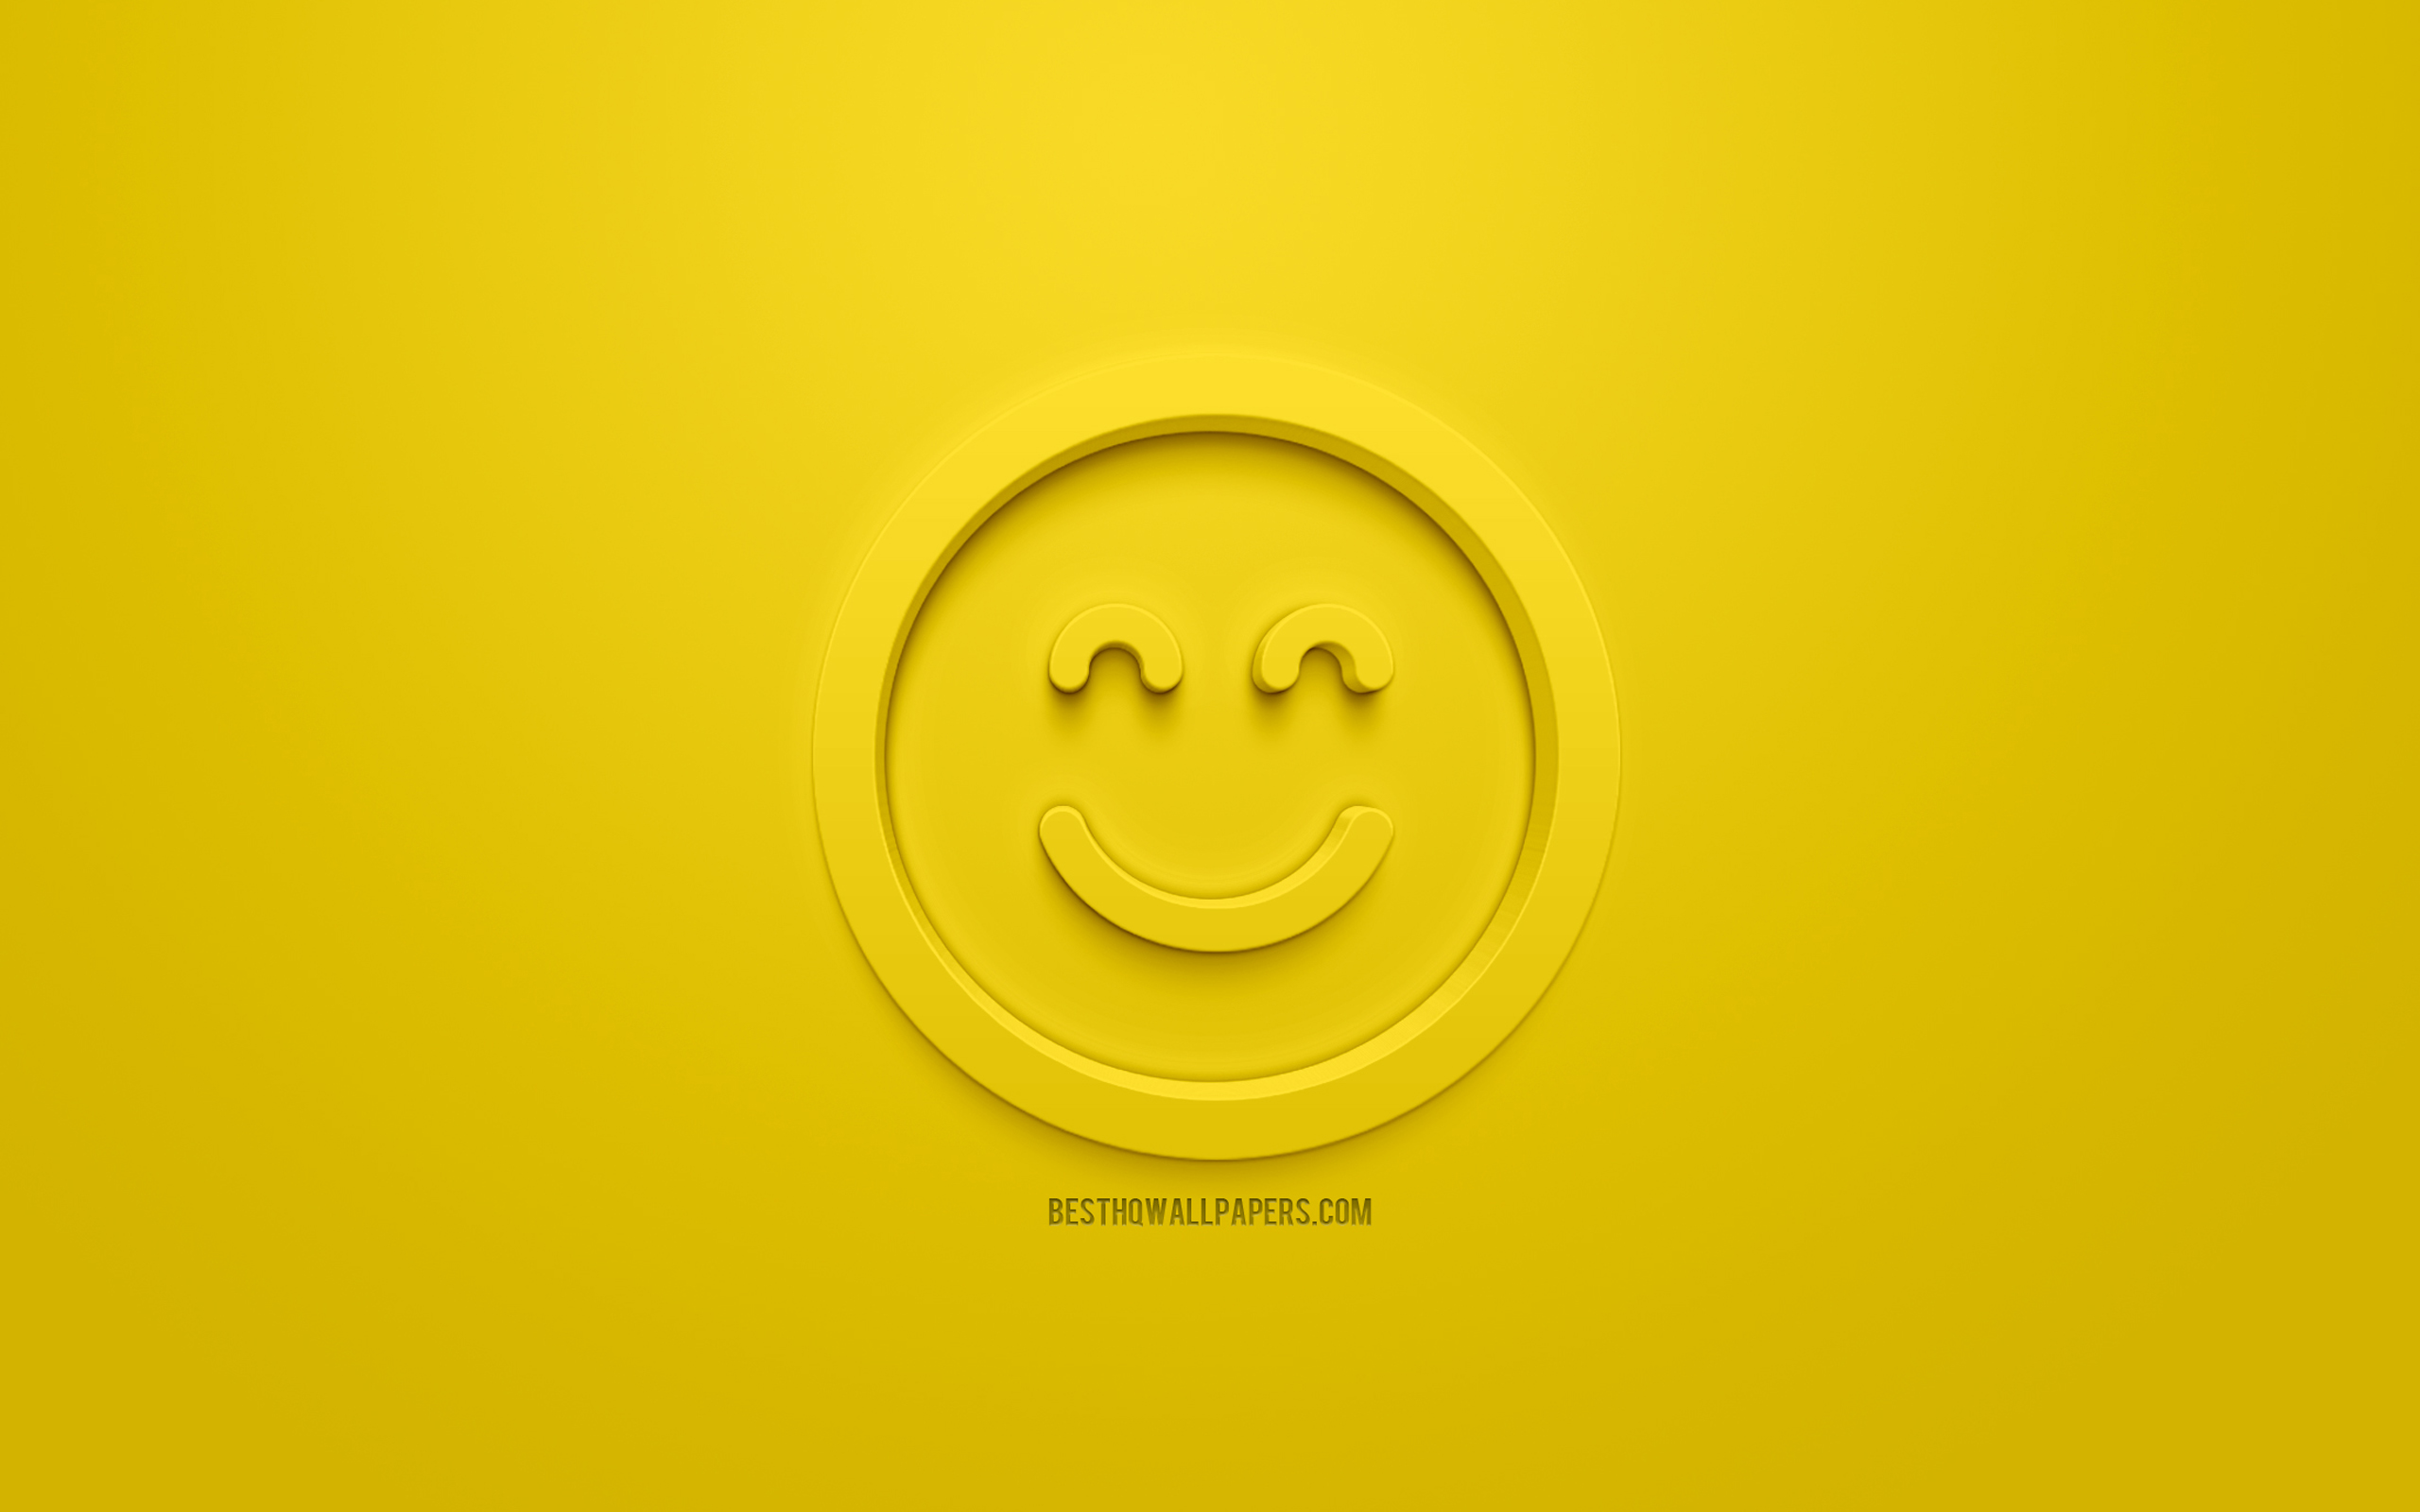 ダウンロード画像 笑顔の3dアイコン 笑顔絵文字四角顔 感情の概念 嬉しい顔アイコン 3dスマイリー 調達の気分 3d笑顔 黄色の背景 創作3dアート 感情3dアイコン スクエア笑顔 画面の解像度 2560x1600 壁紙デスクトップ上